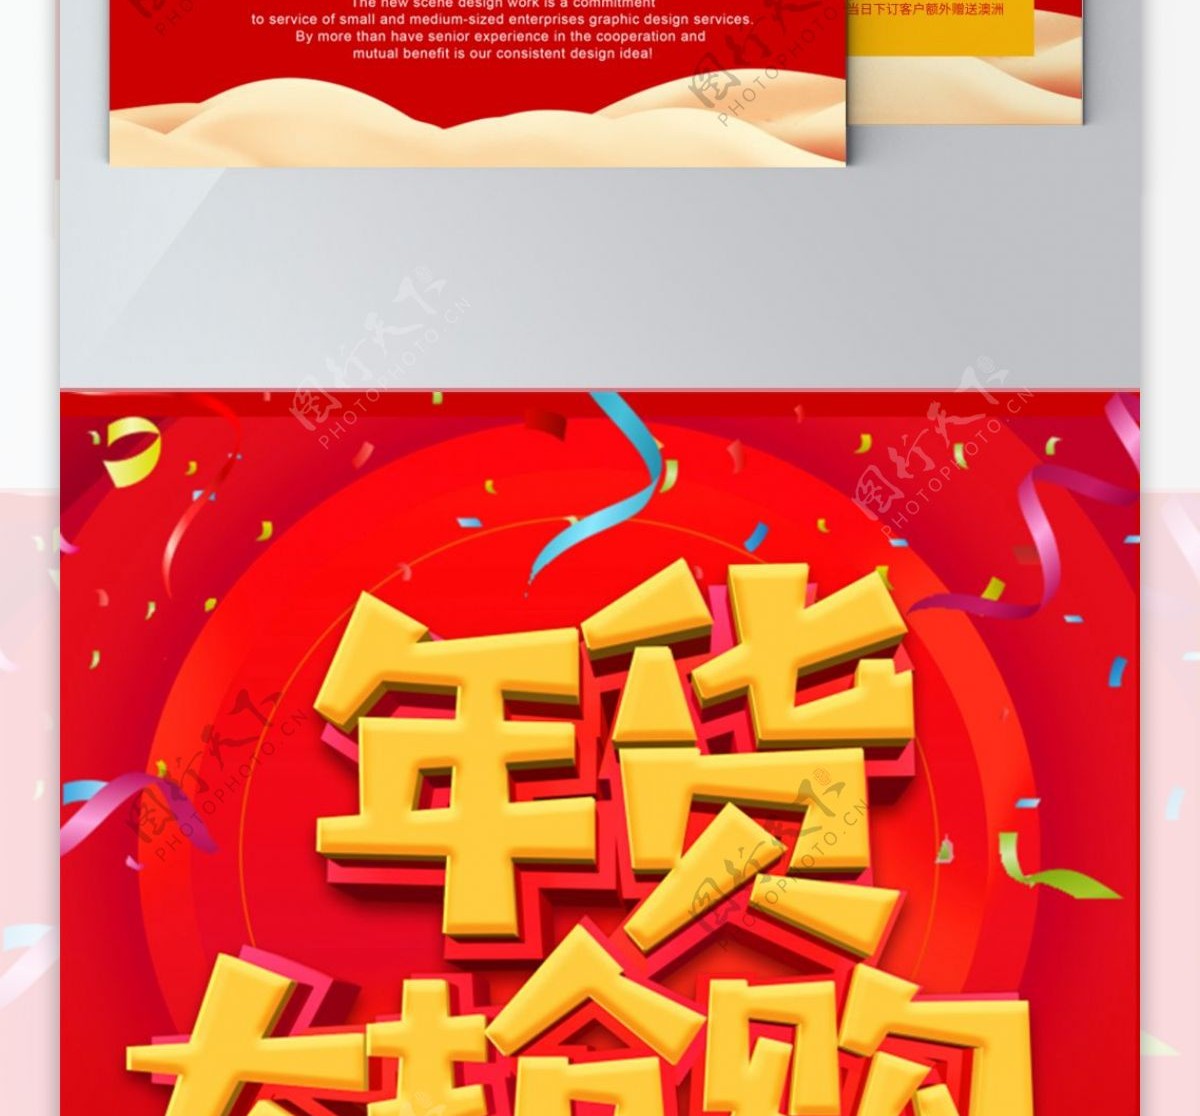 红色喜庆超市促销宣传单